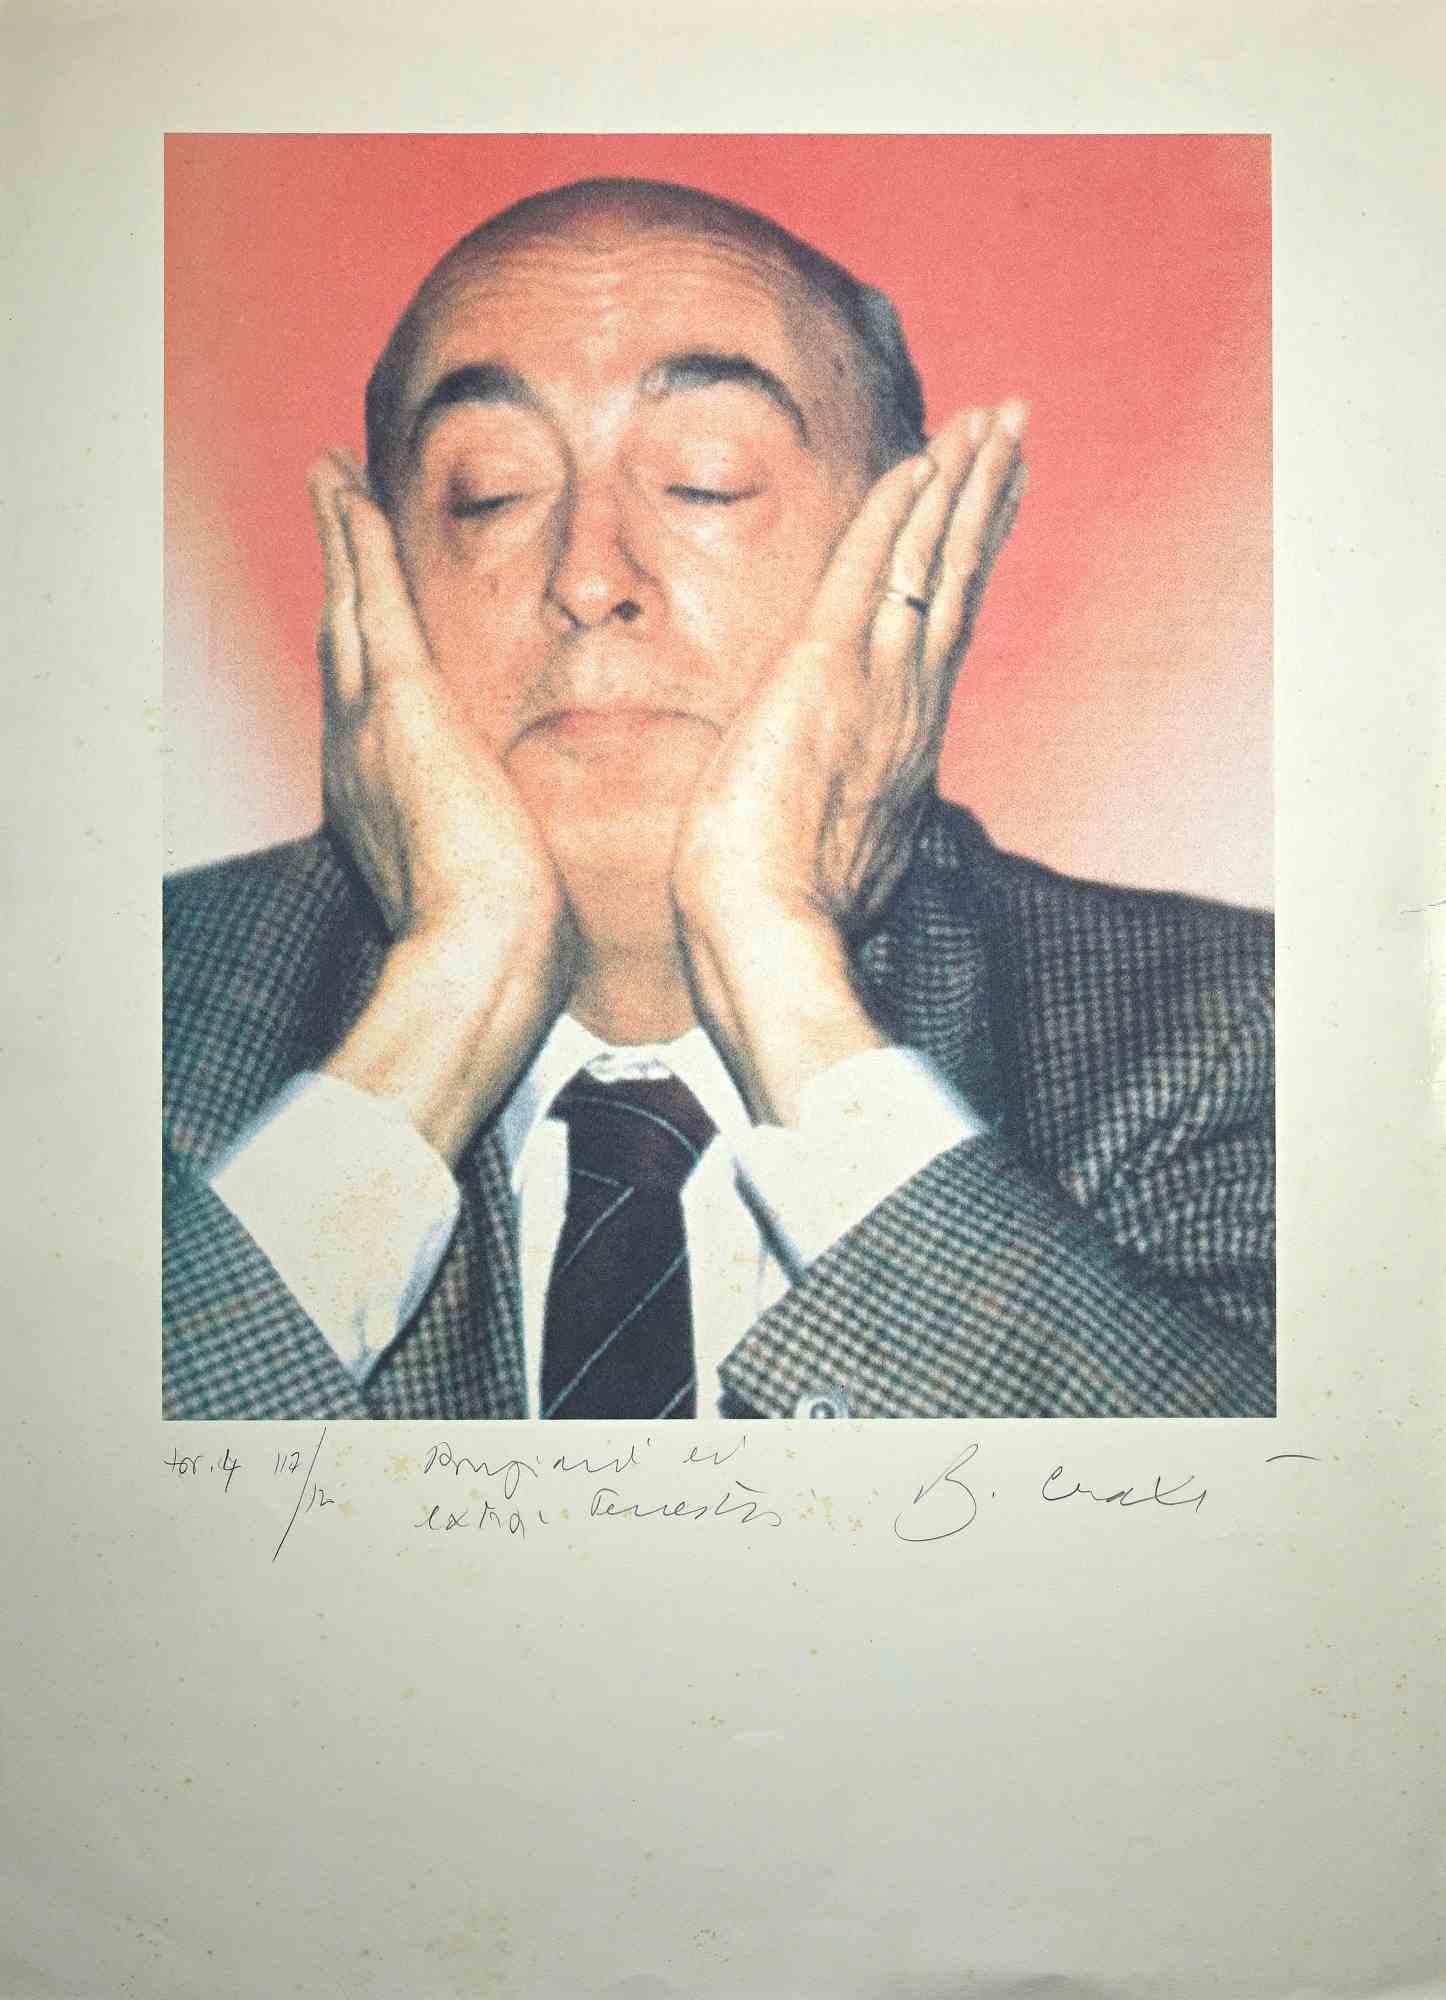 Gli Extra-Terrestri ist eine Original-Fotolithografie des italienischen Politikers Bettino Craxi.

Handsigniert mit Bleistift unten rechts.

Ein wertvolles Exemplar, links unten nummeriert, Auflage 117/120 Exemplare. Links unten betitelt.

Sehr